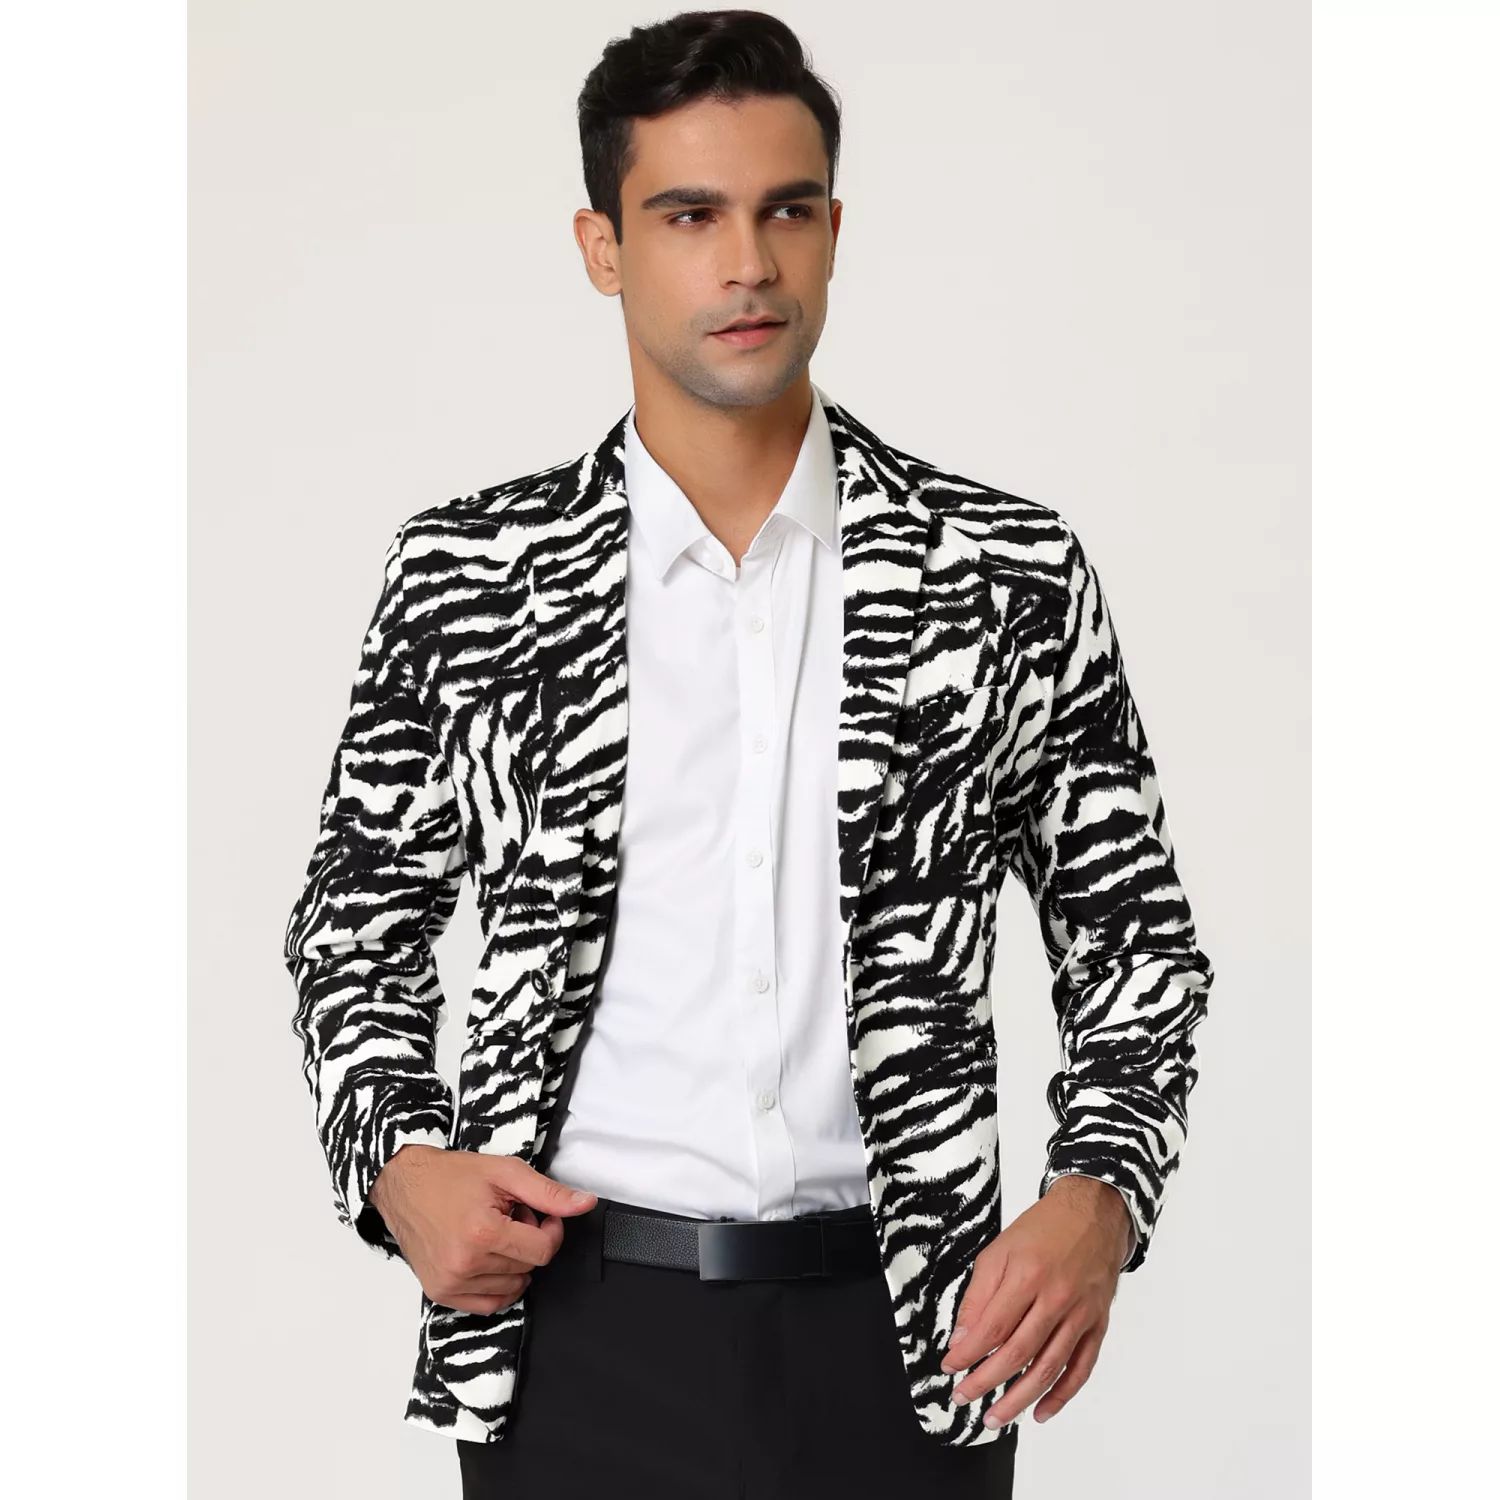 Мужской винтажный приталенный пиджак с леопардовым принтом и зубчатыми лацканами Lars Amadeus мужской деловой приталенный пиджак на одной пуговице деловой пиджак lars amadeus